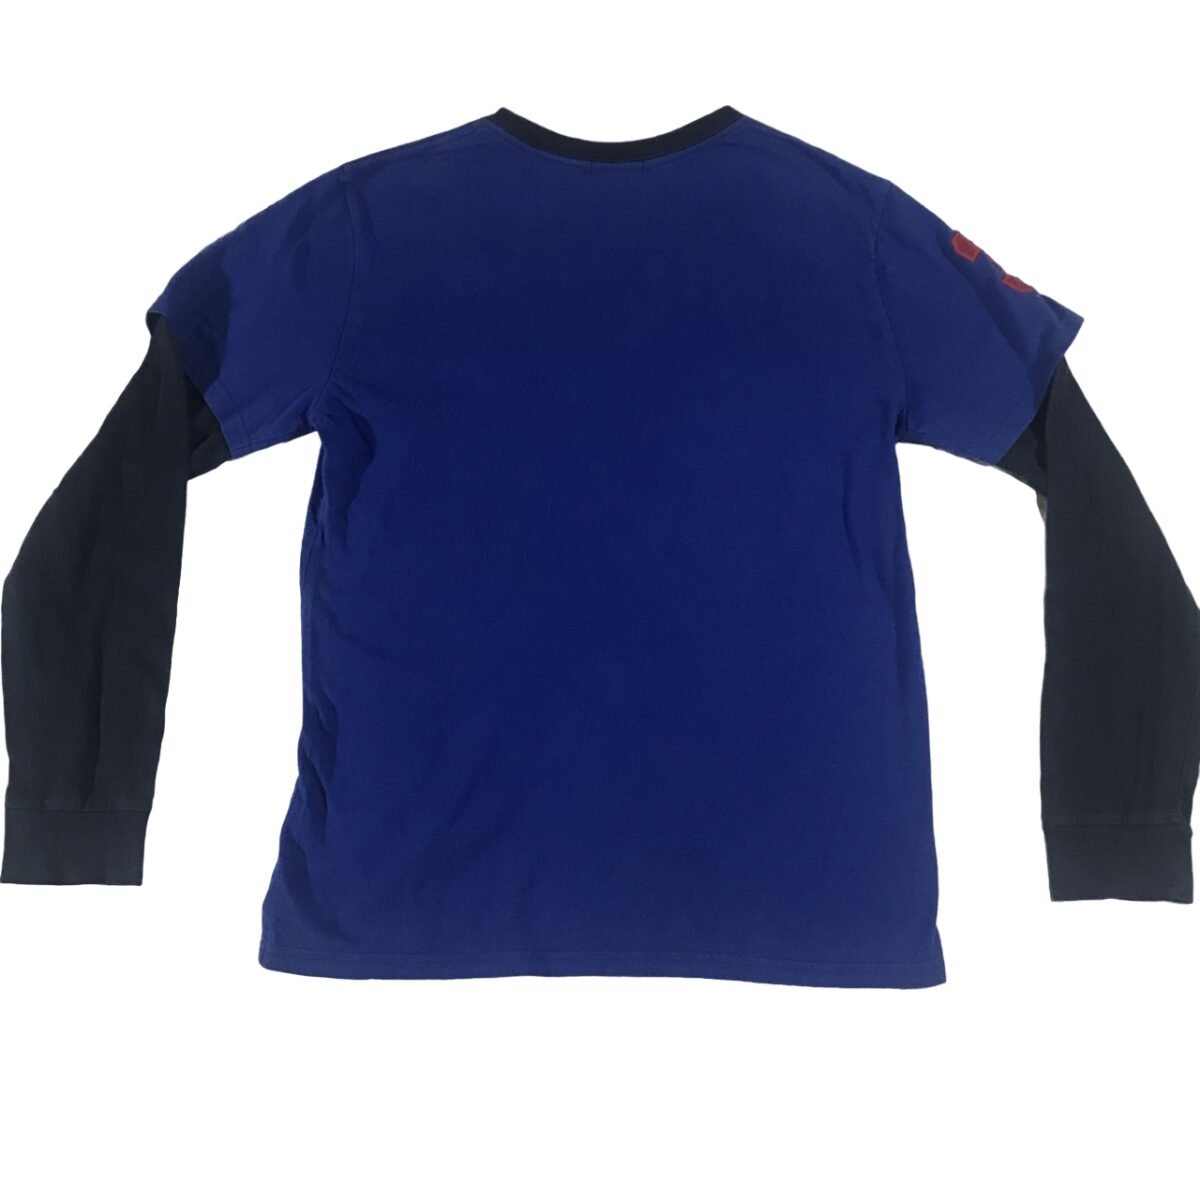 T-shirt Longsleeve Polo Ralph Lauren blue black